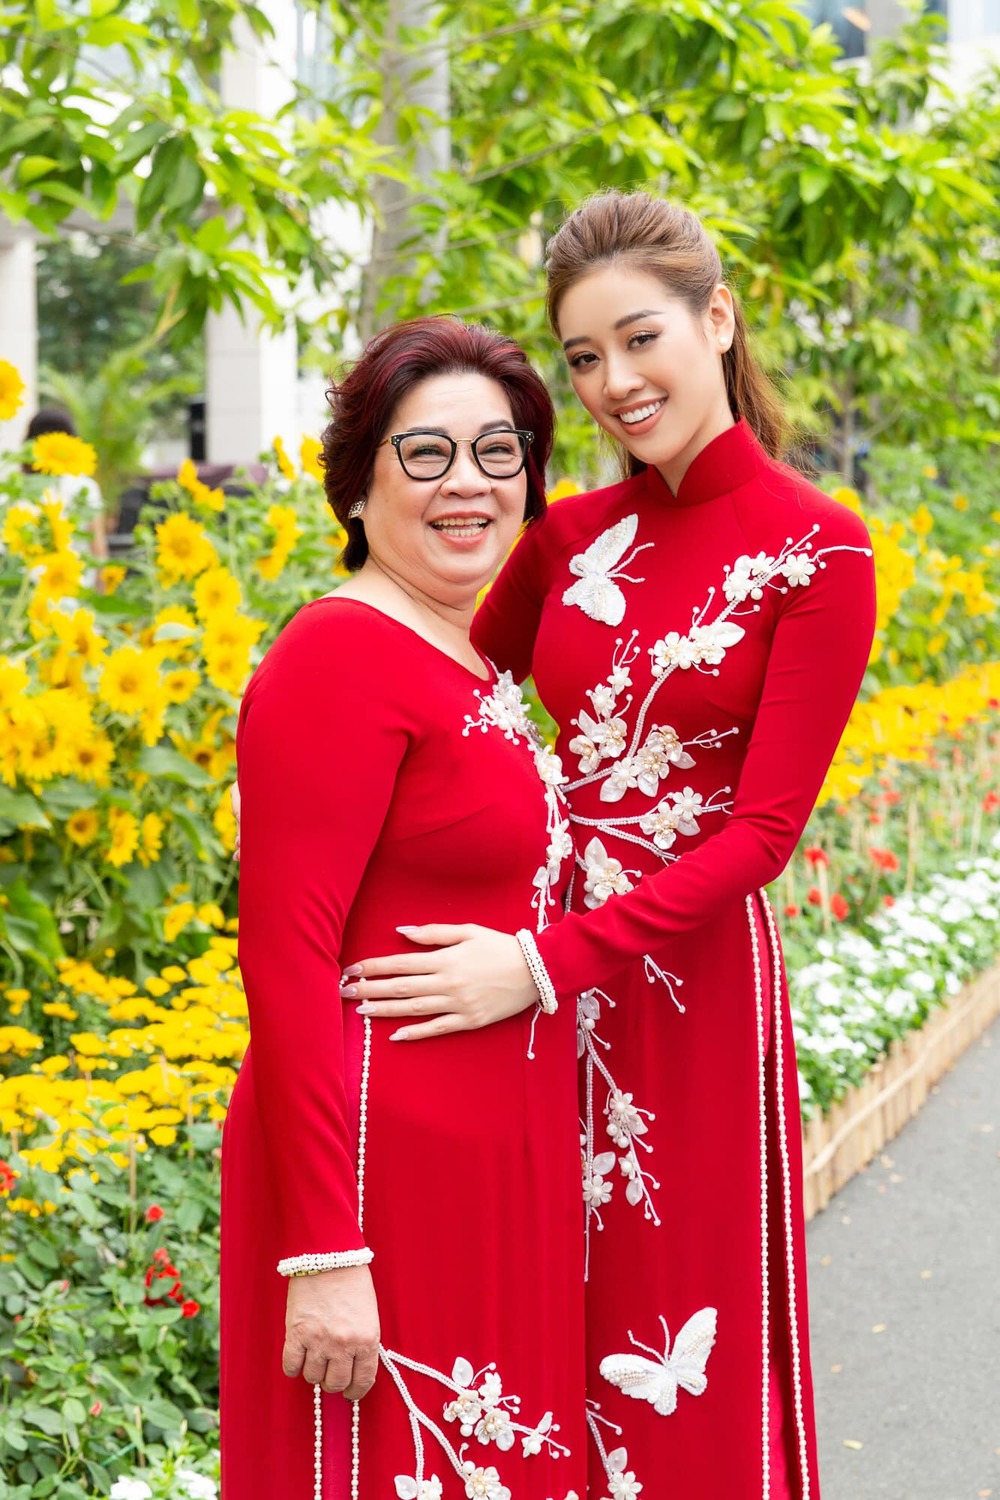 Hoa hậu Khánh Vân tung bộ ảnh gia đình, fan hiểu ngay vì sao cô đẹp thế - Ảnh 5